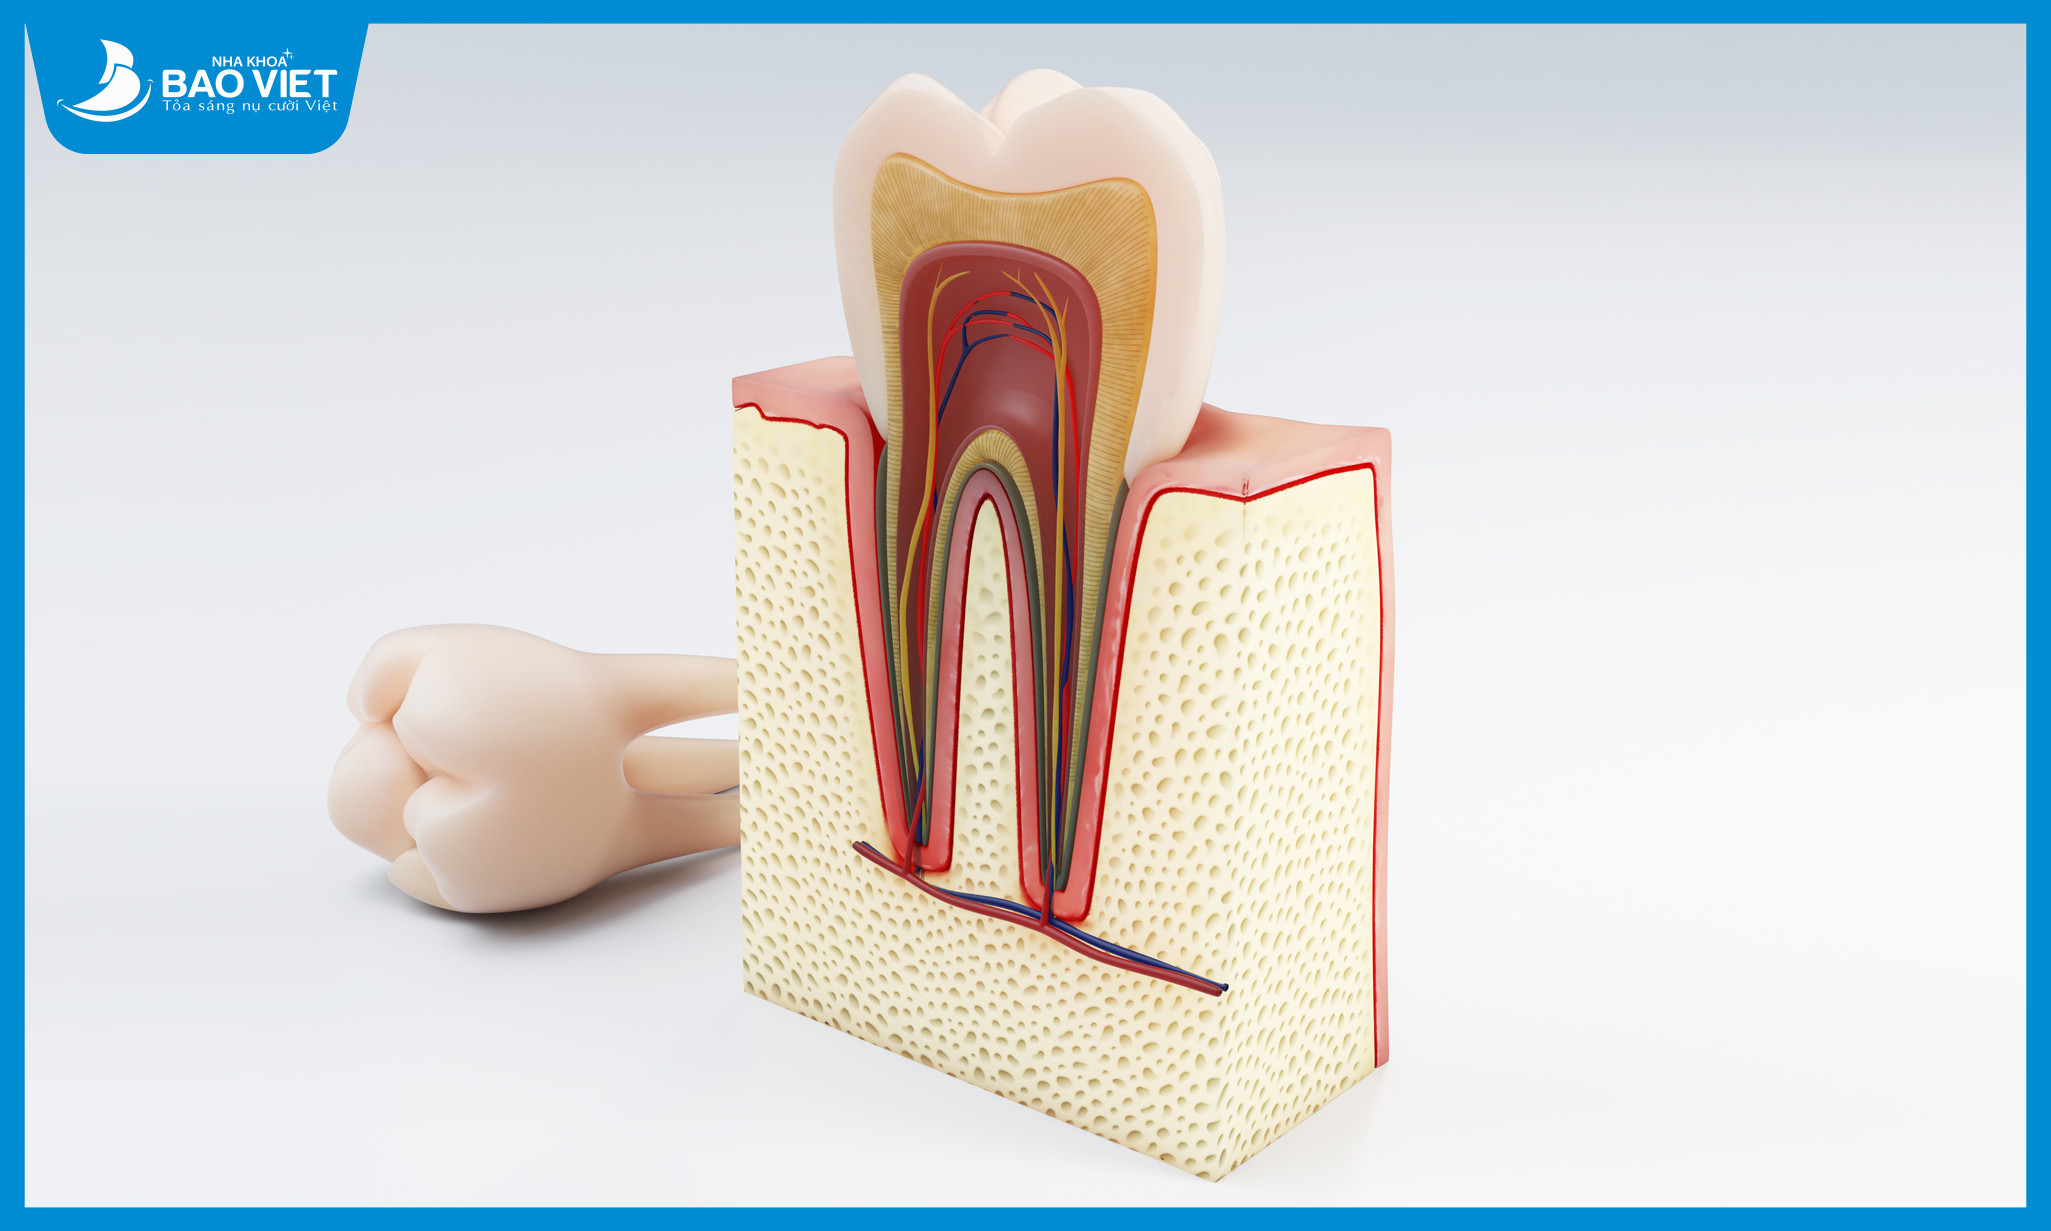 Tủy răng thực chất là một tổ chức liên kết chứa các dây thần kinh và mạch máu nằm ở giữa răng